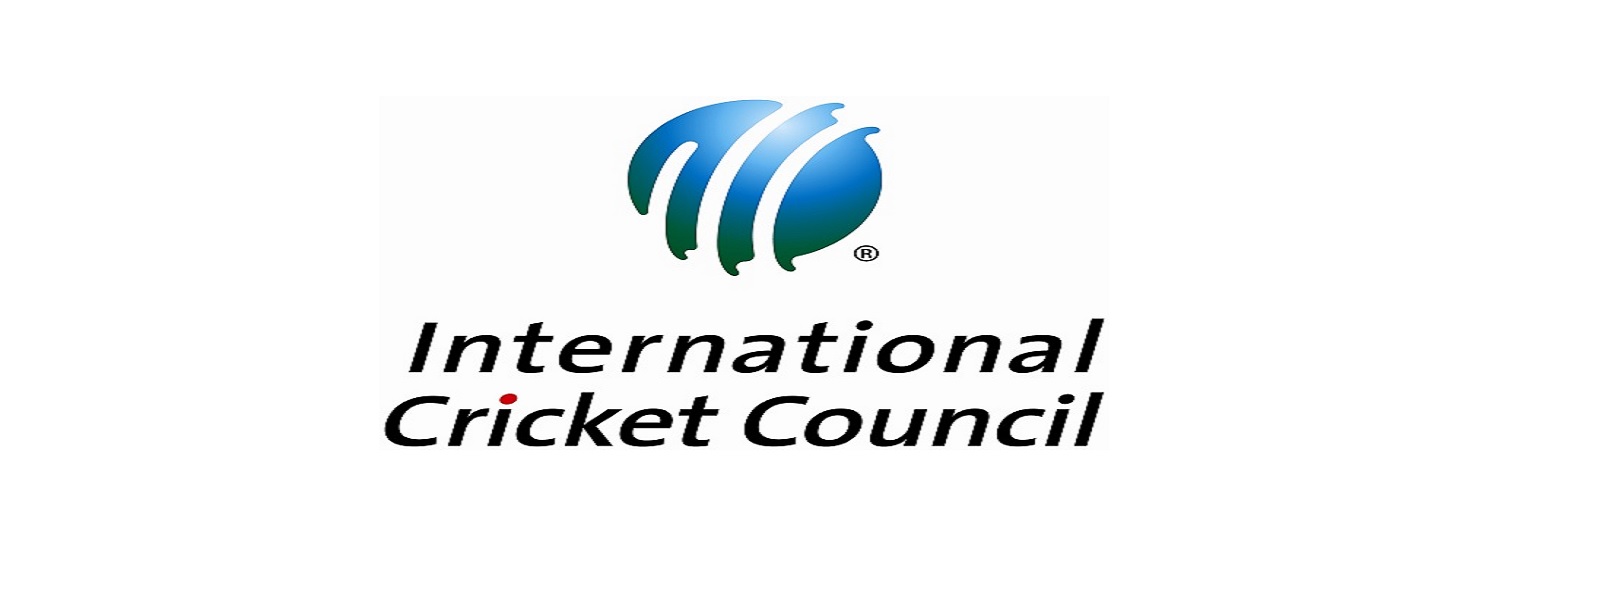 இந்தியா-பாகிஸ்தான் இடையிலான போட்டி குறித்து ICC